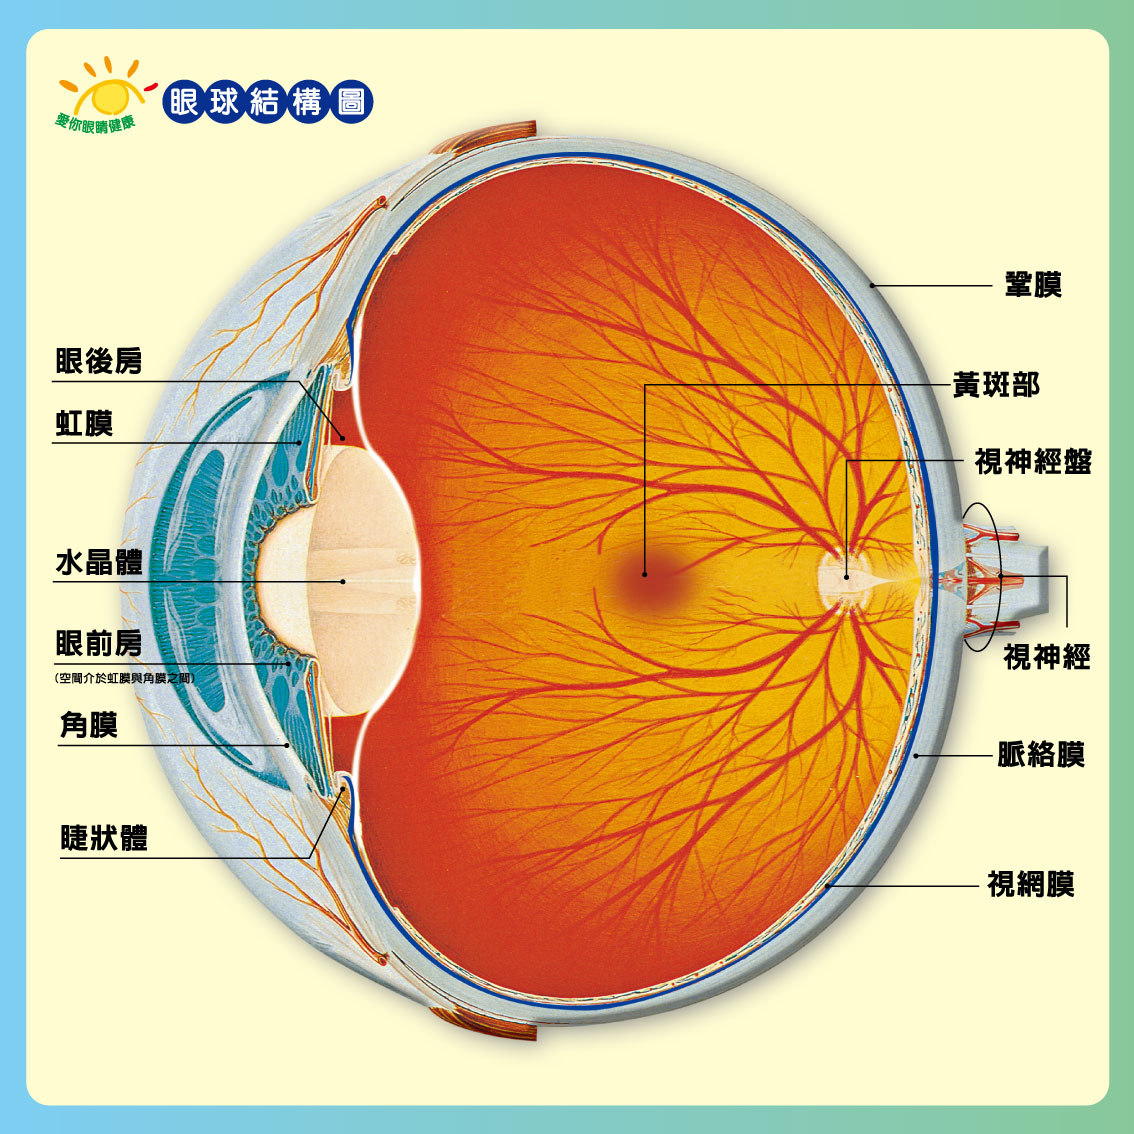 角膜与结膜的位置图